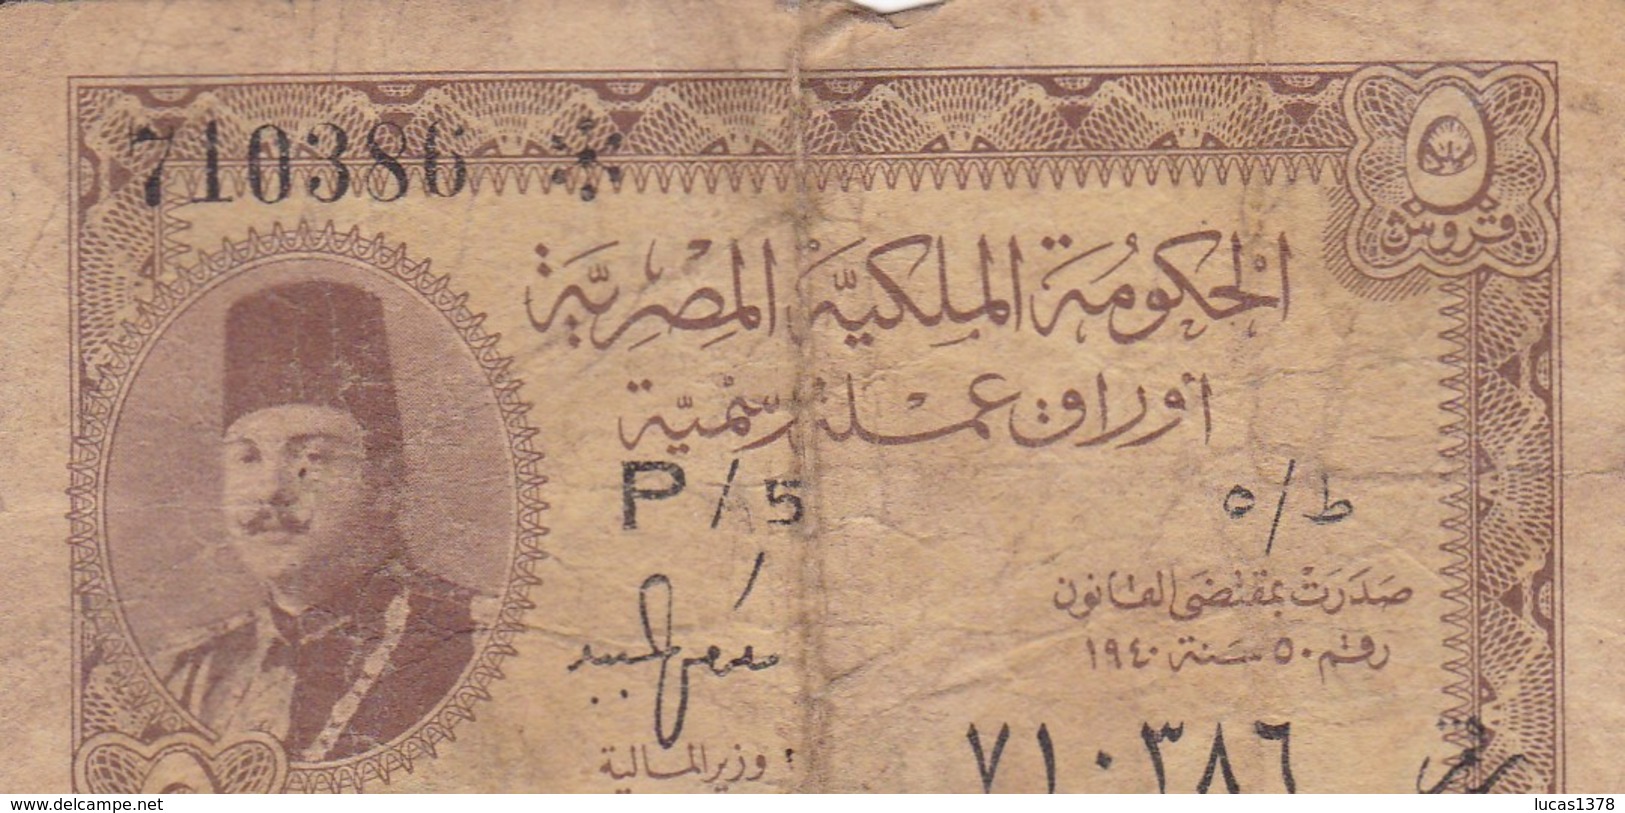 Aegypten , Egypt 5 Piastres 1940 Banknote,Egypte LAW N° 50/1940 - Egipto